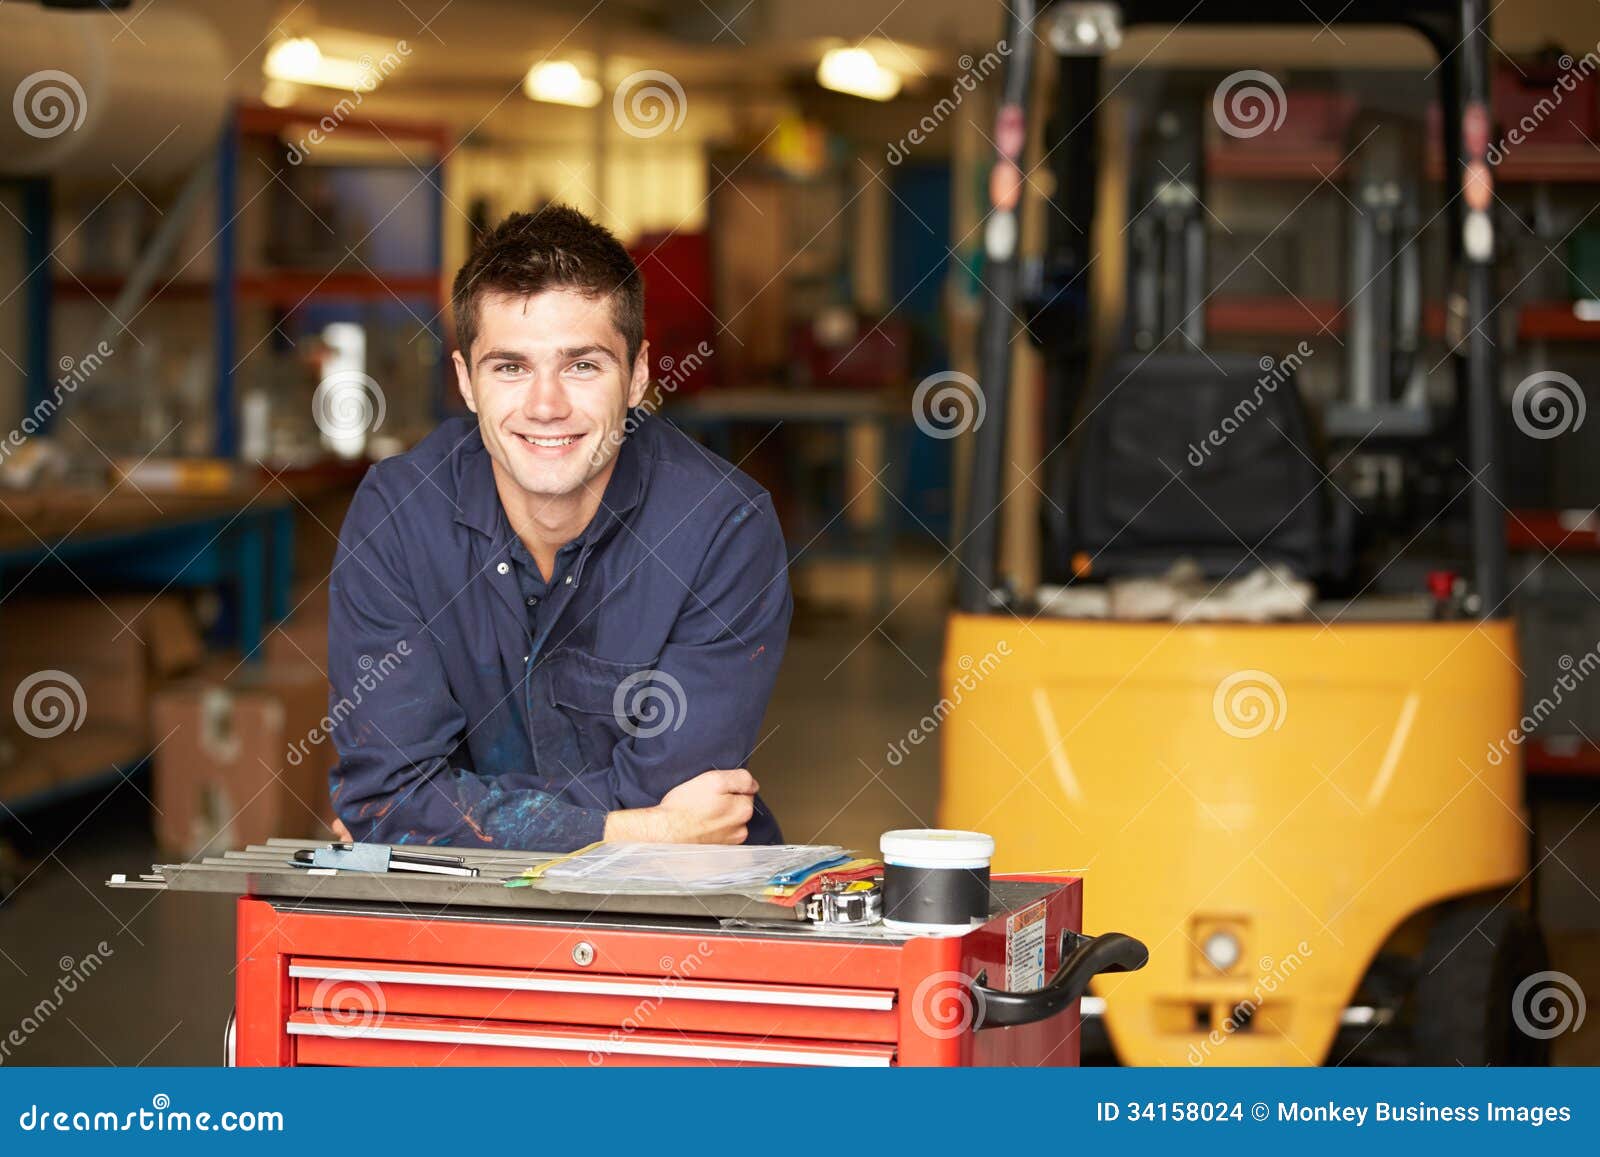 portrait of apprentice engineer in factory